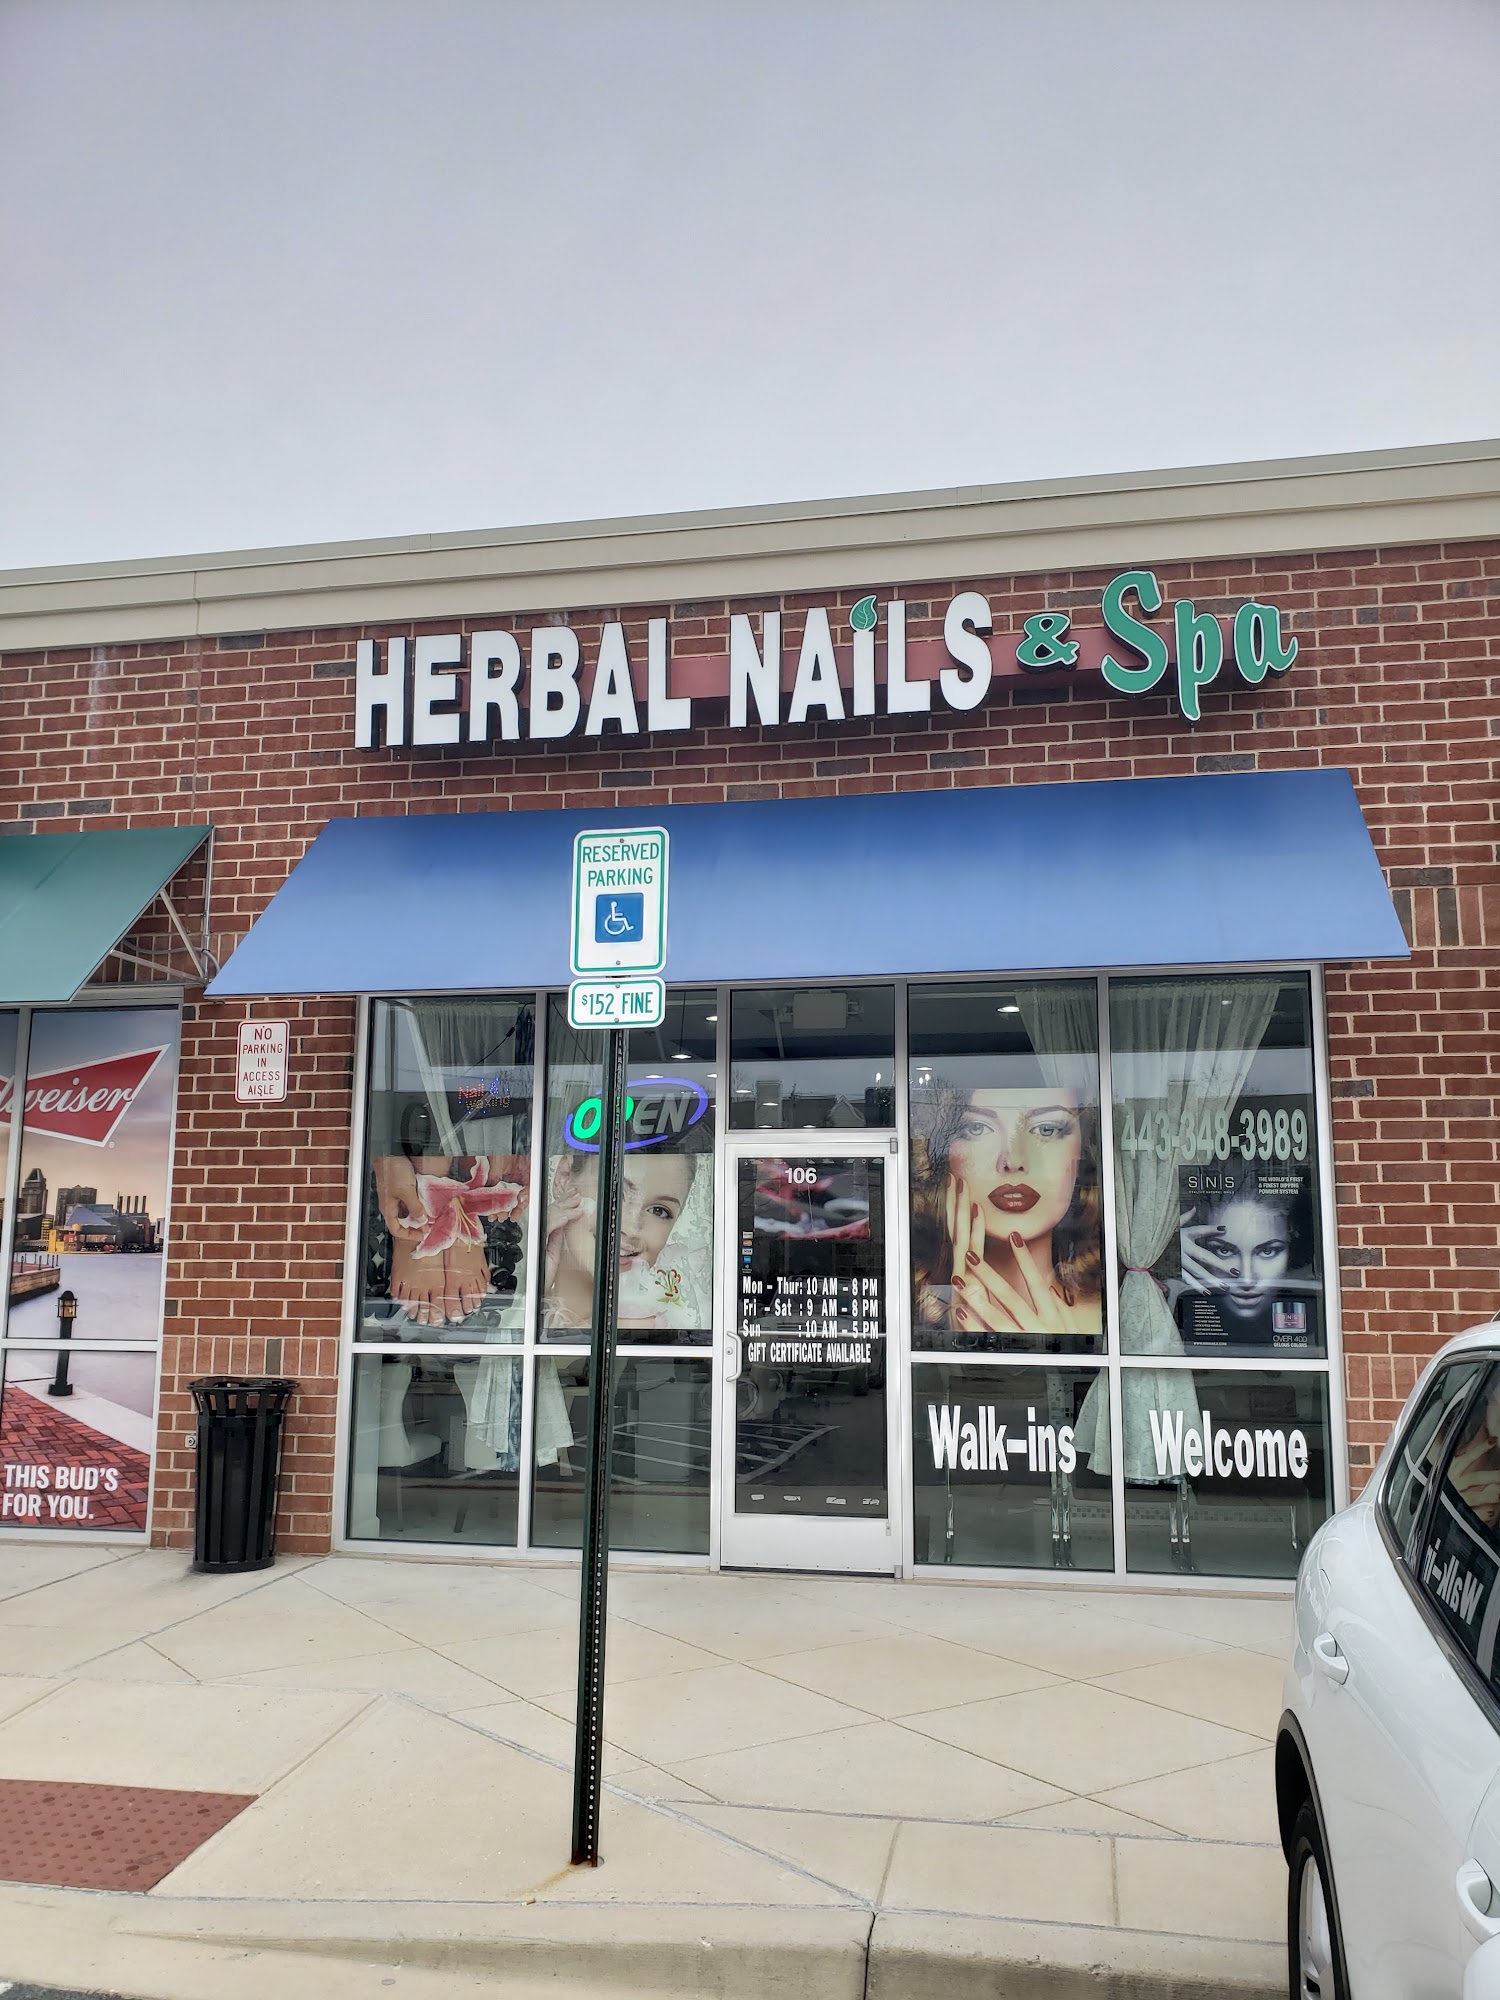 Herbal nails & spa